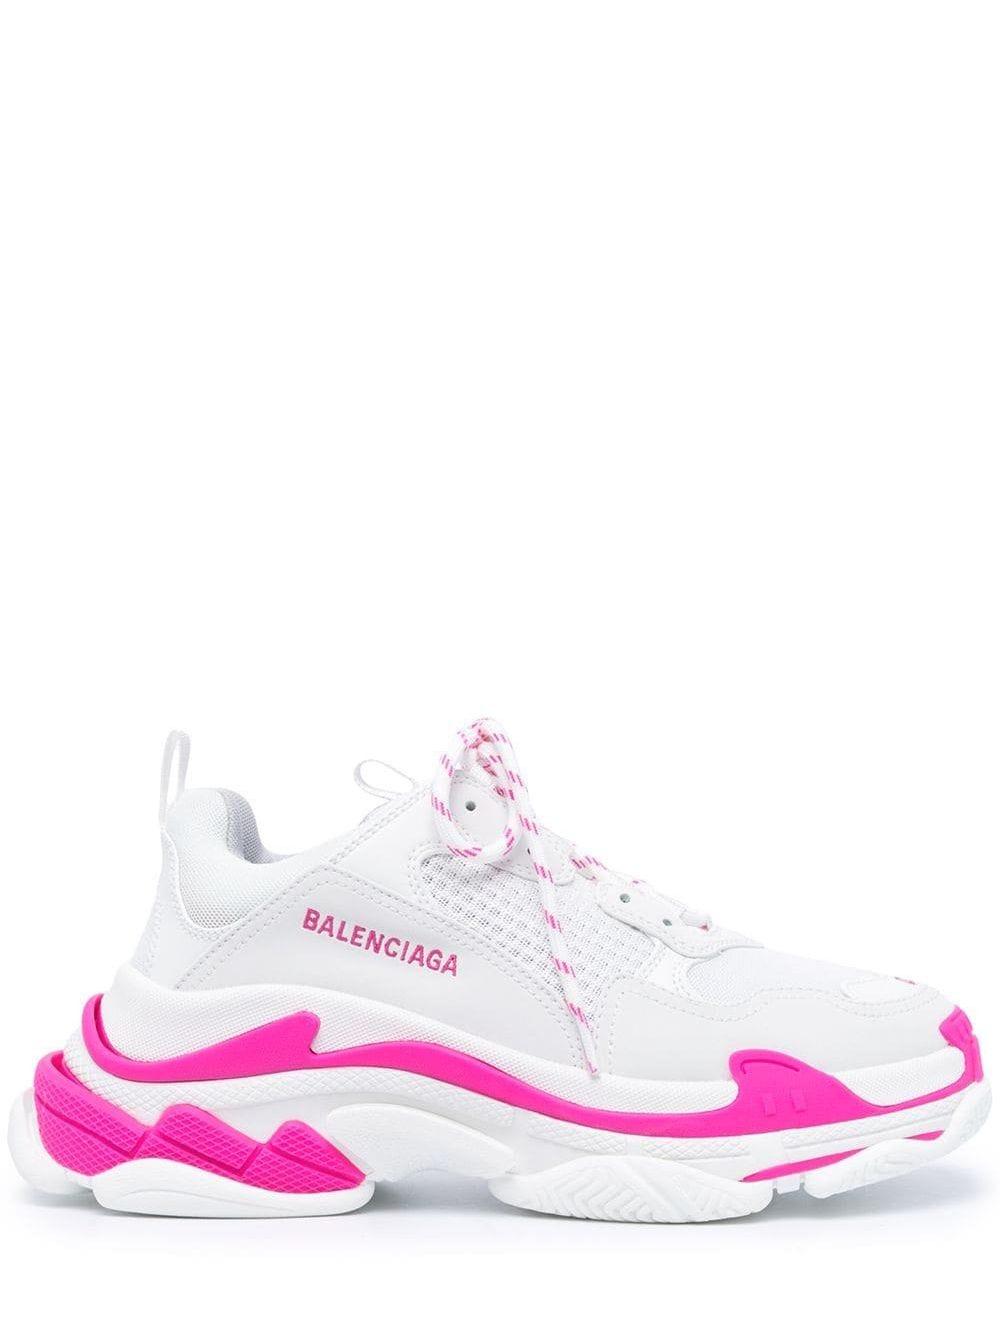 Light pink Triple S sneakers featuring Balenciaga allover logo print   BALENCIAGA  Nida